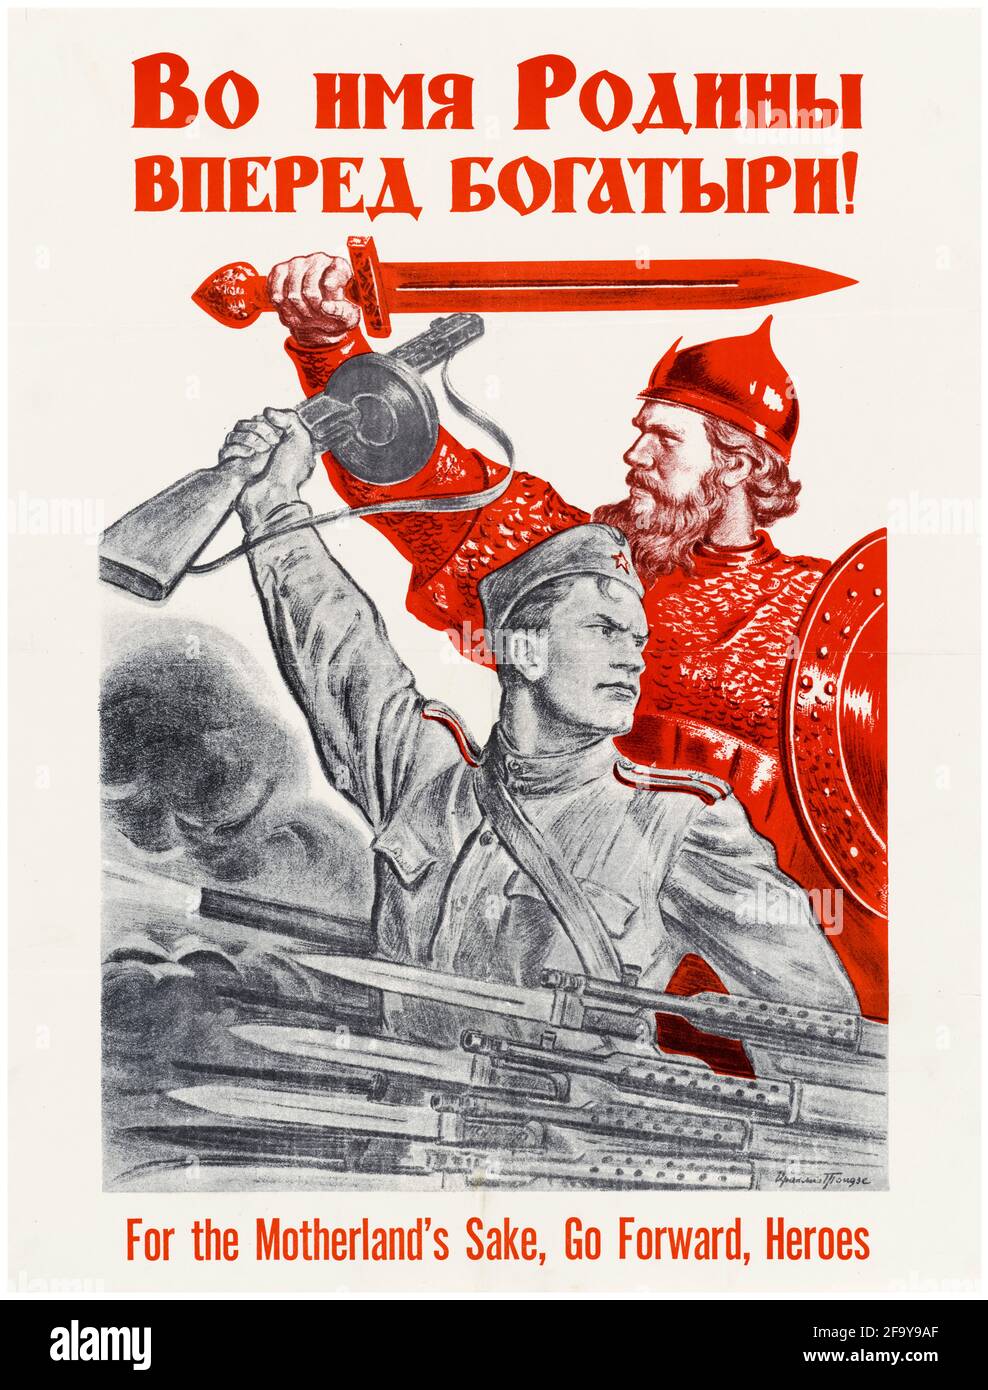 Russisch, Motivationsplakat des 2. Weltkrieges, für die Go Forward Heroes des Mutterlandes, 1942-1945 Stockfoto